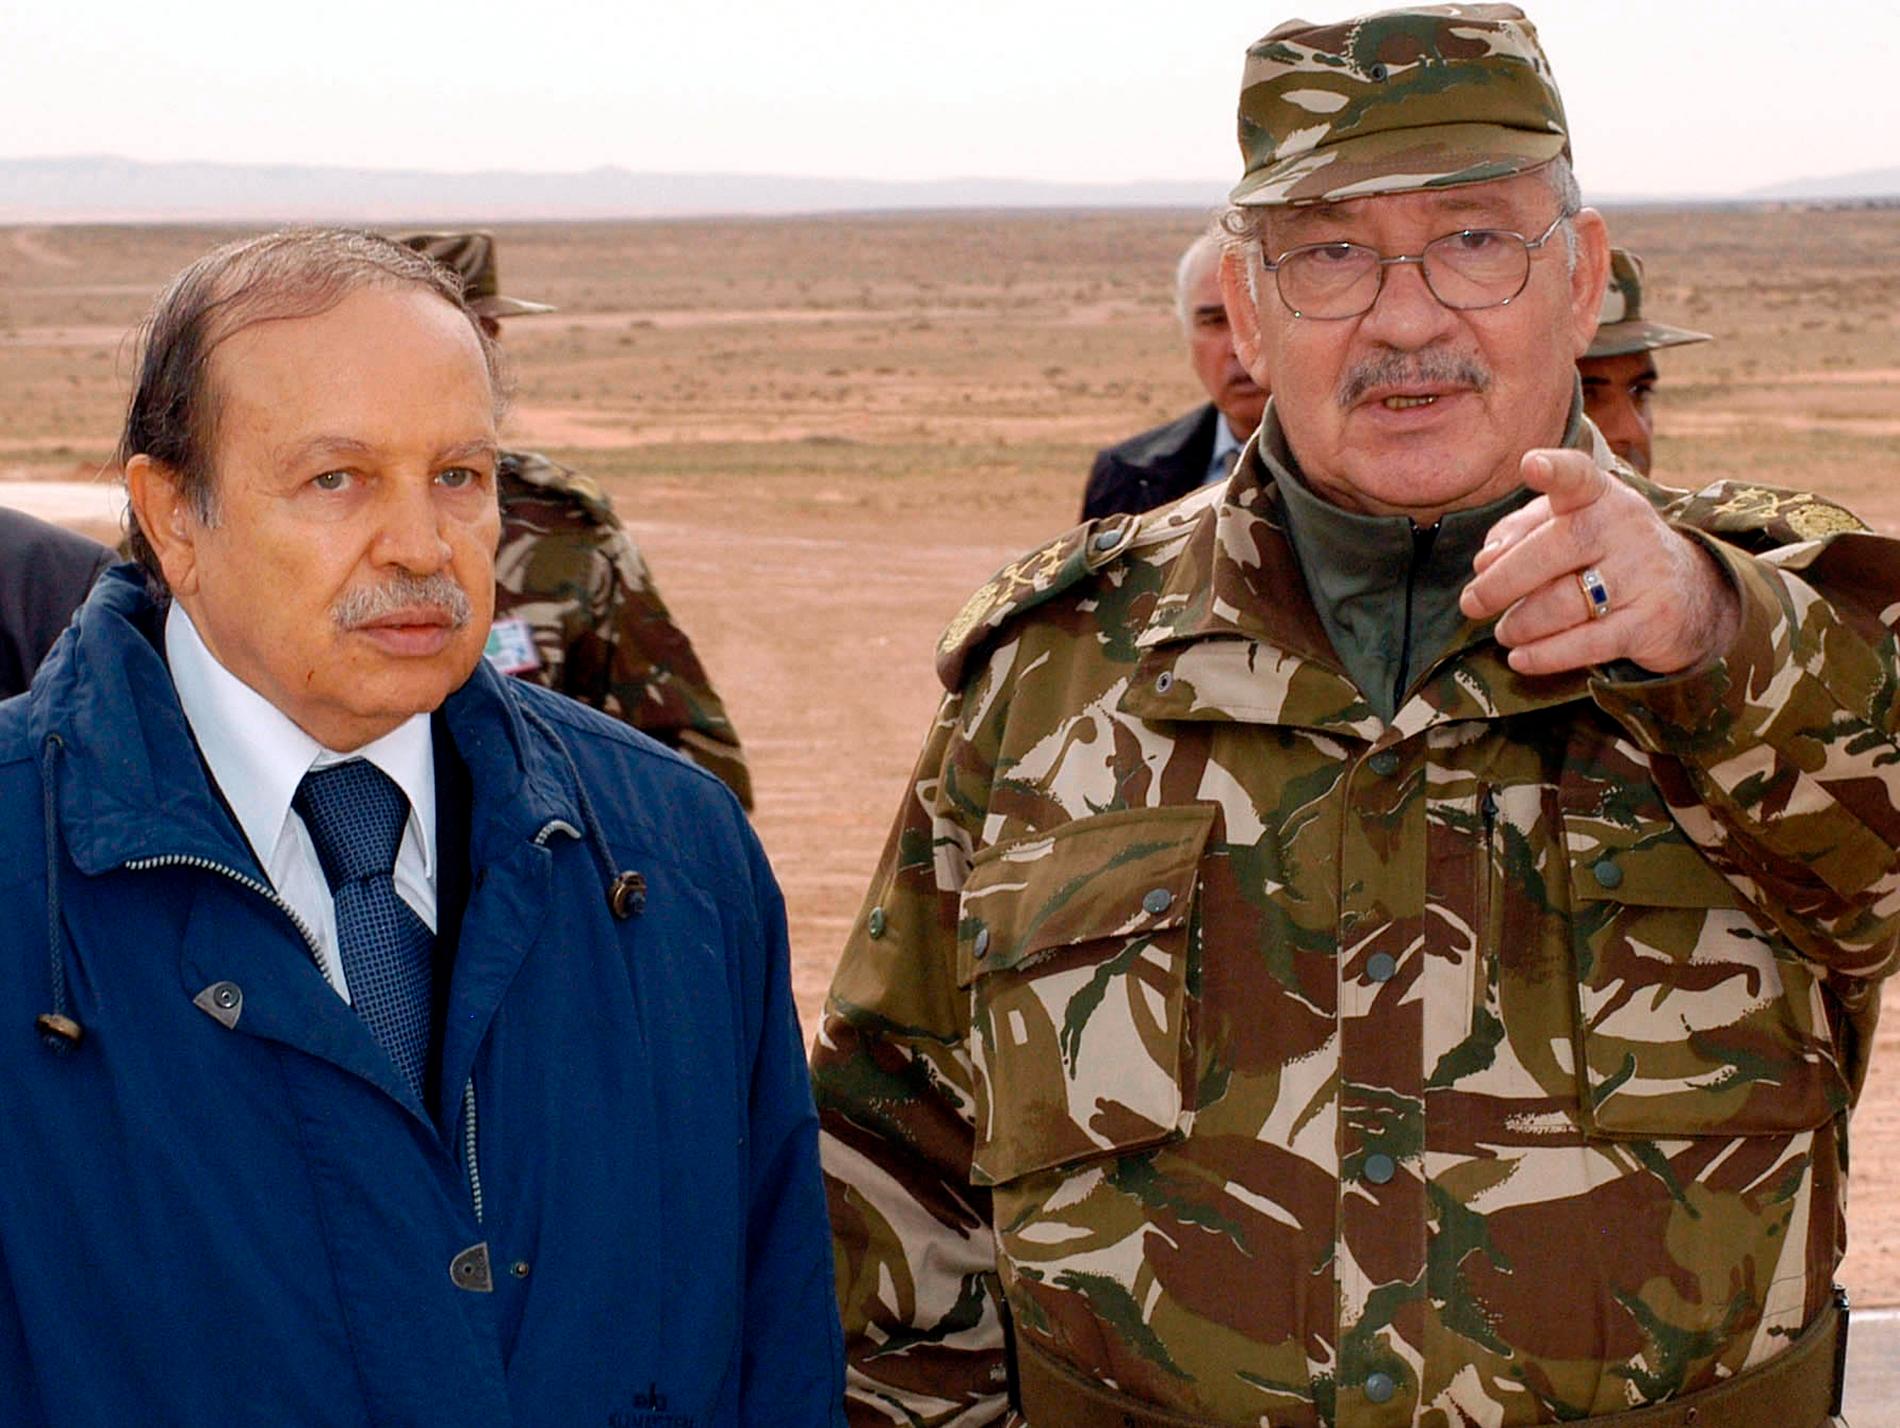 Militärens ledare Ahmed Gaed Salah (höger) vill att president Abdelaziz Bouteflika (vänster) avsätts. Arkivbild från 2005.